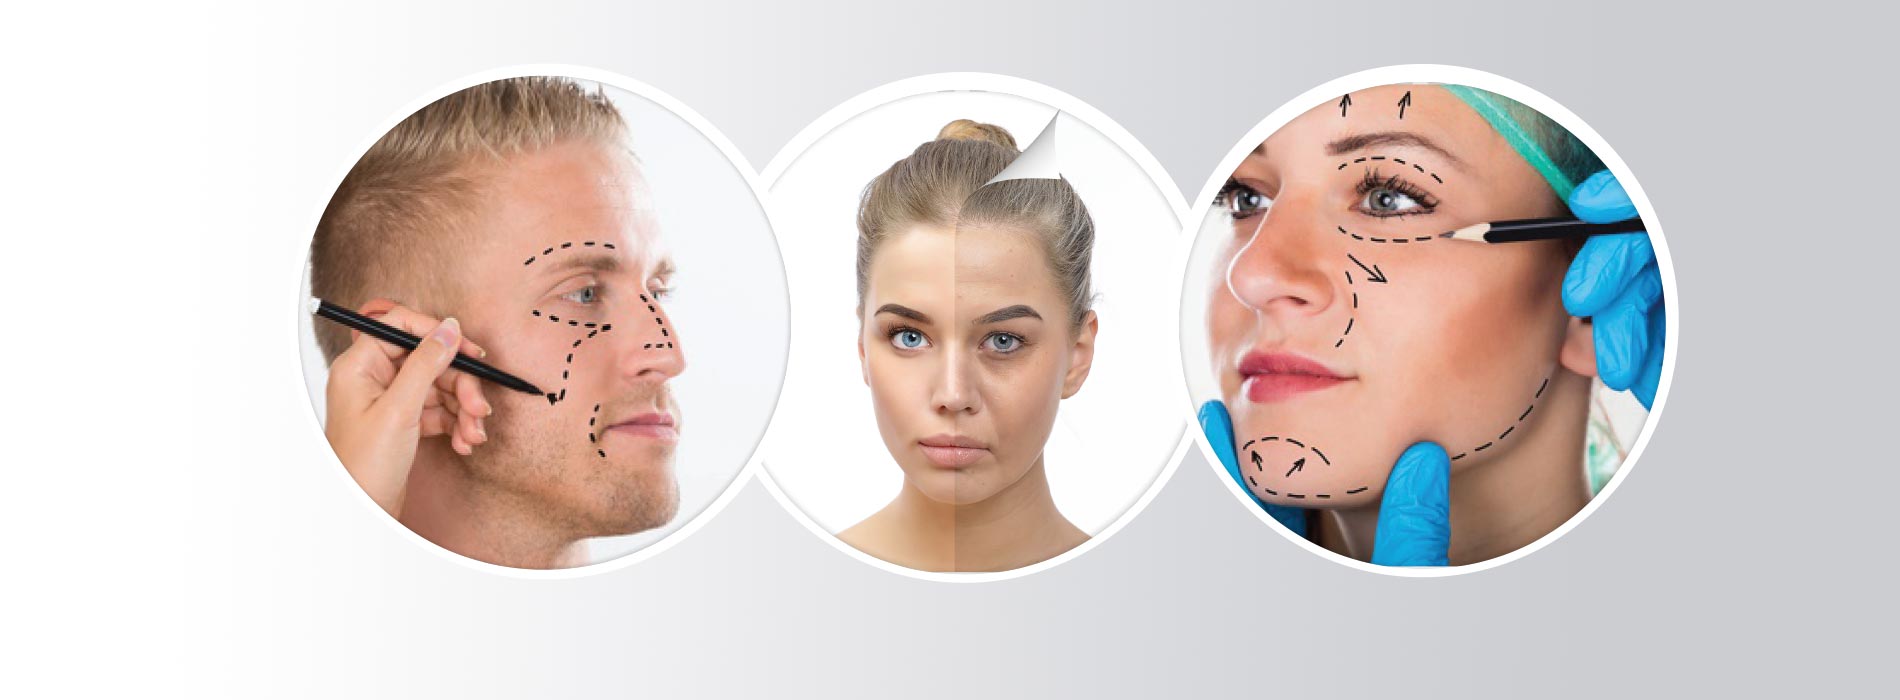 Cirugía Plastica Estetica Facial en Oviedo y Gijon Doctores Rehberger